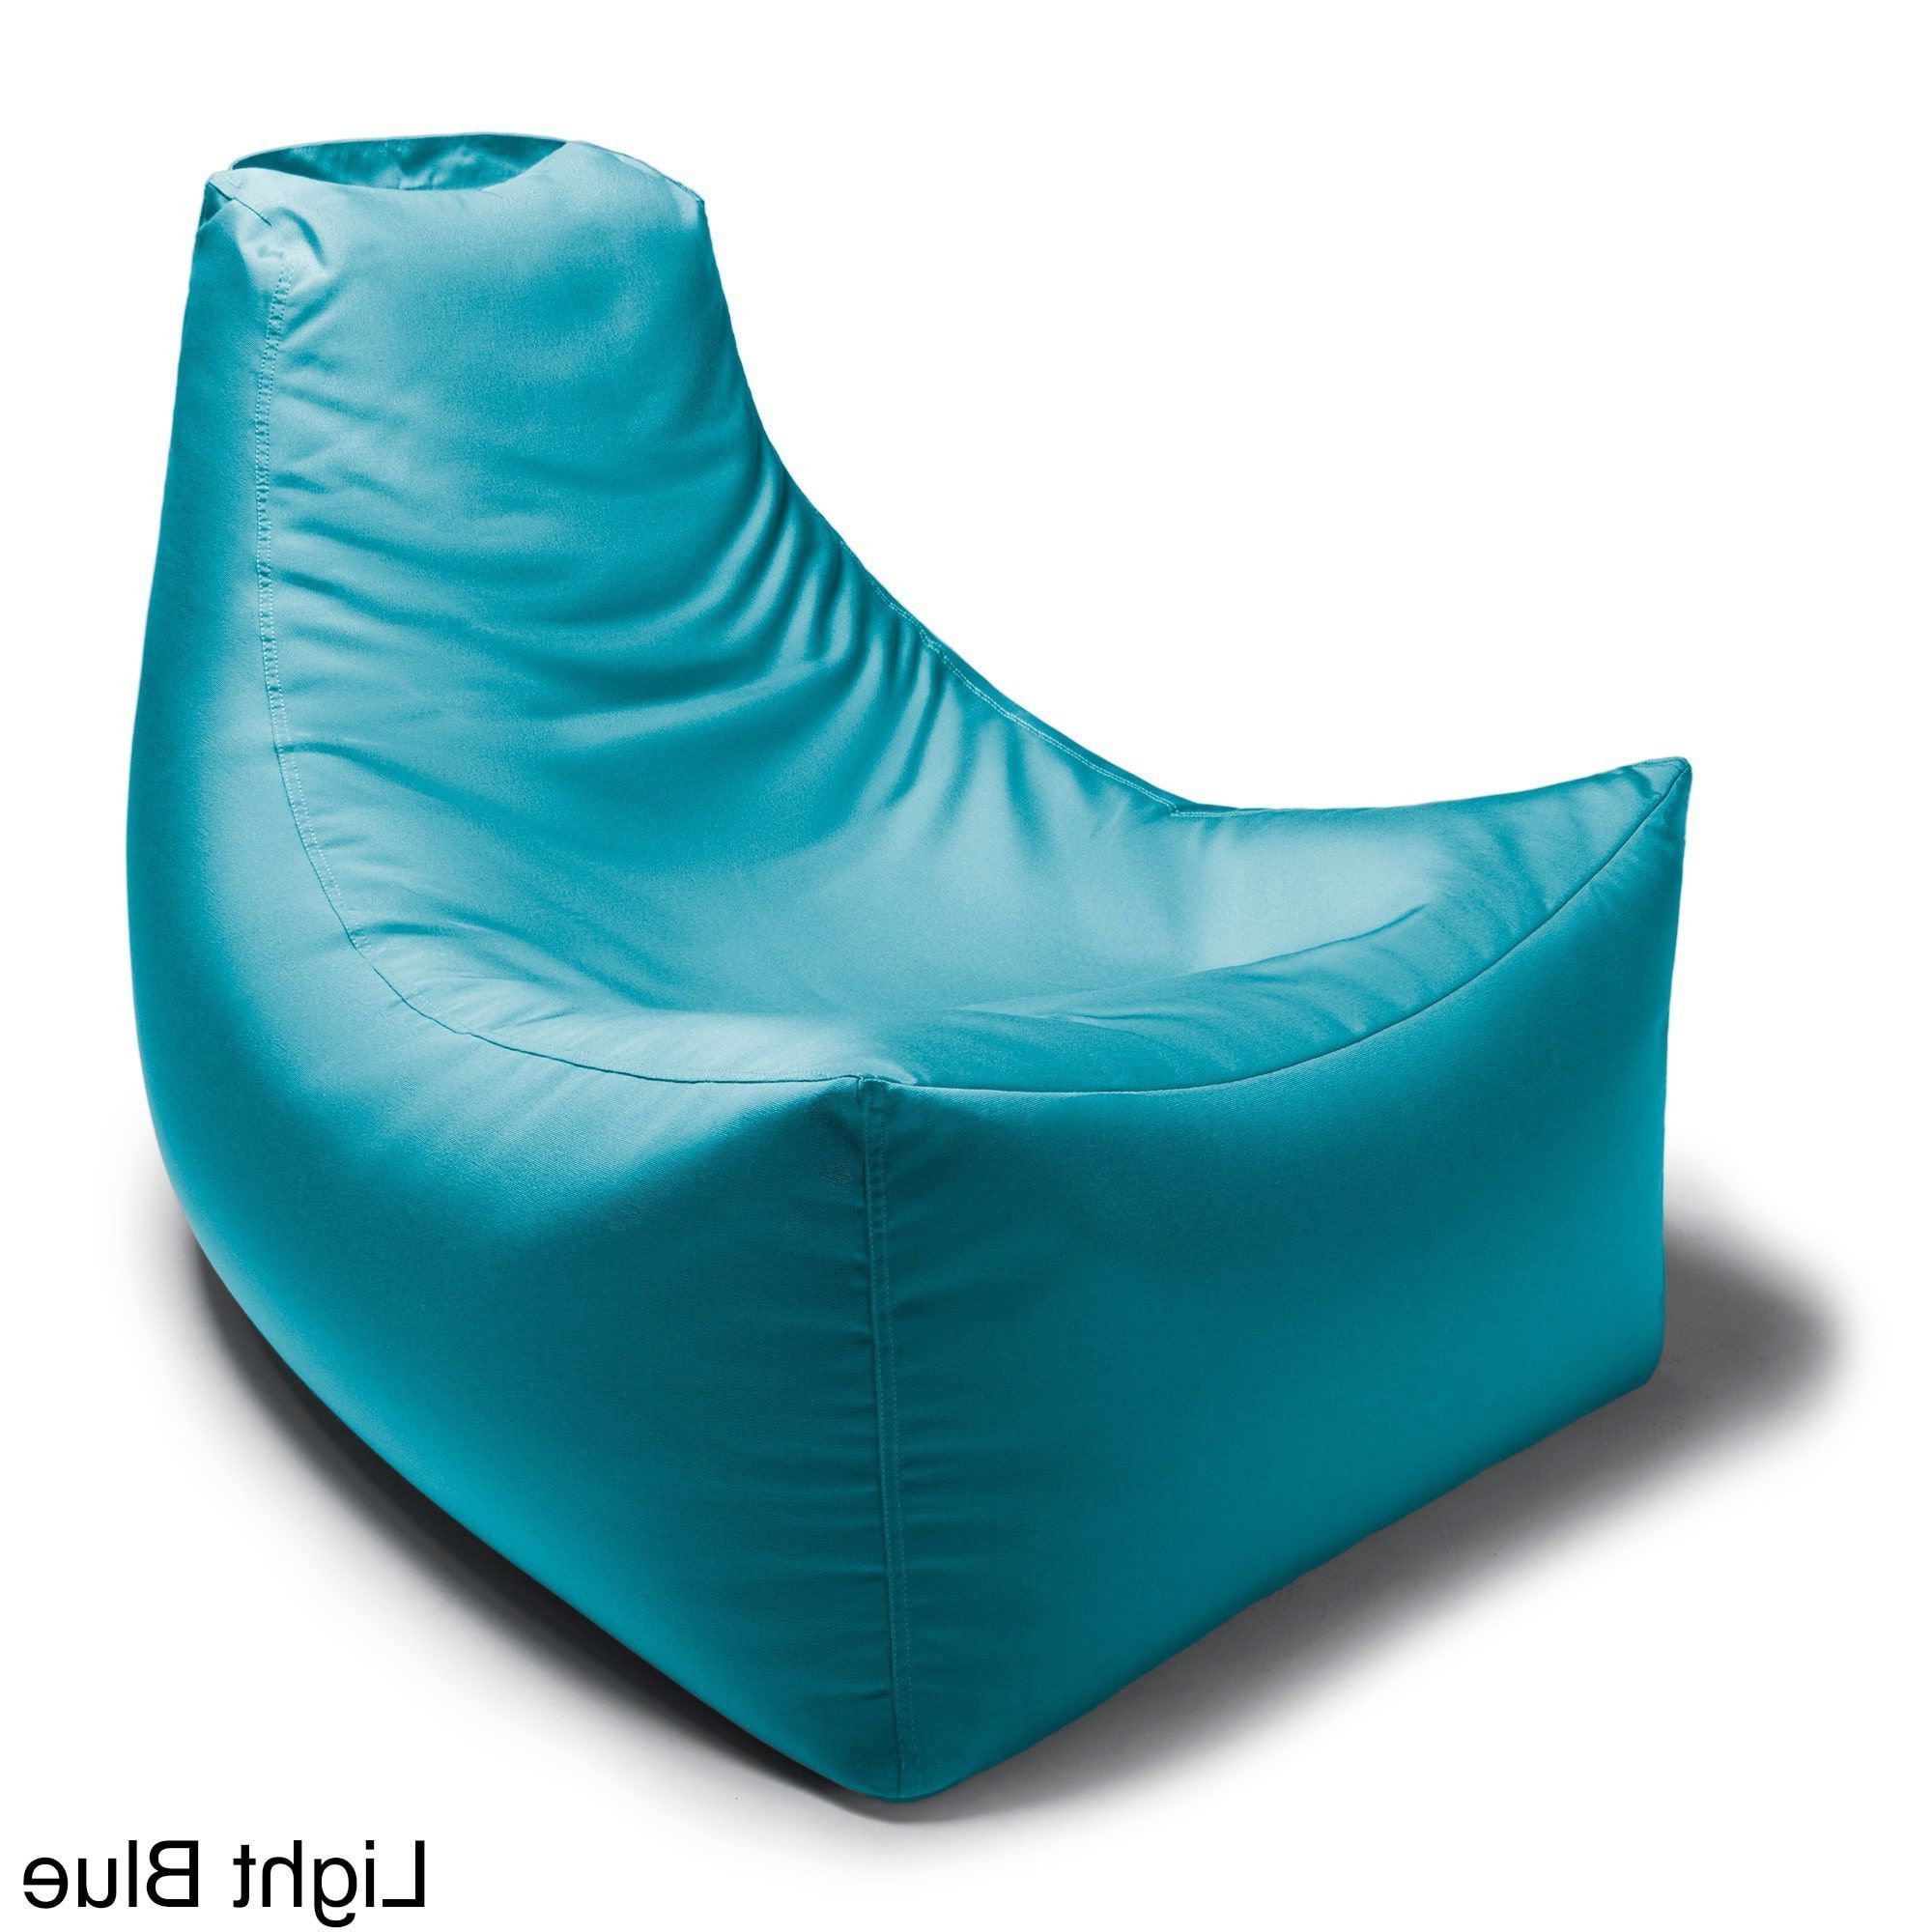 Jaxx Juniper Indoor/ Outdoor Patio Bean Bag Chair (water With Most Up To Date Jaxx Twist Outdoor Patio Bean Bag Chairs (View 5 of 25)